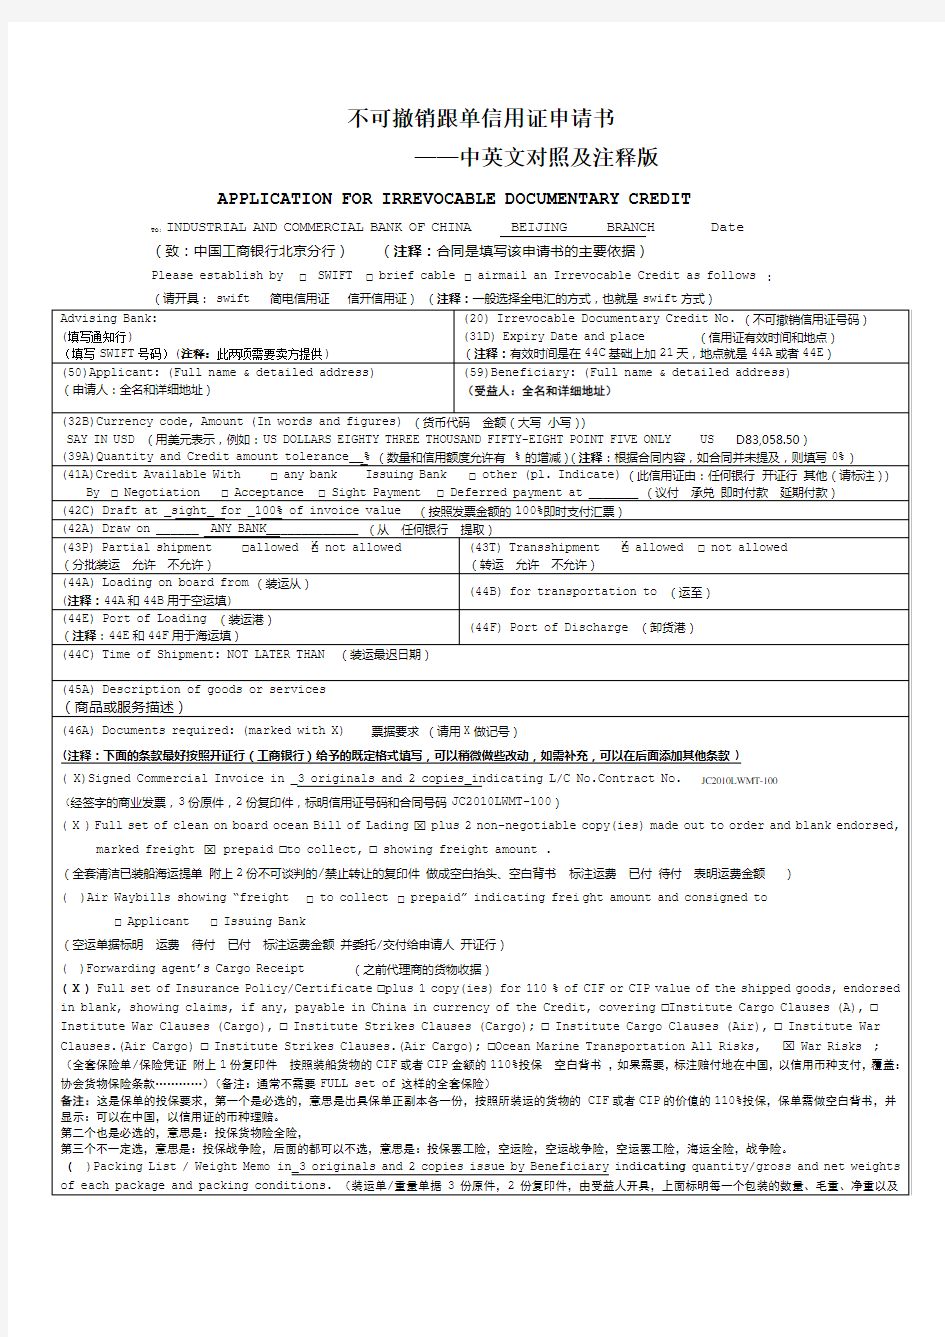 不可撤销跟单信用证申请书(中英文对照及注释版)avicxiao